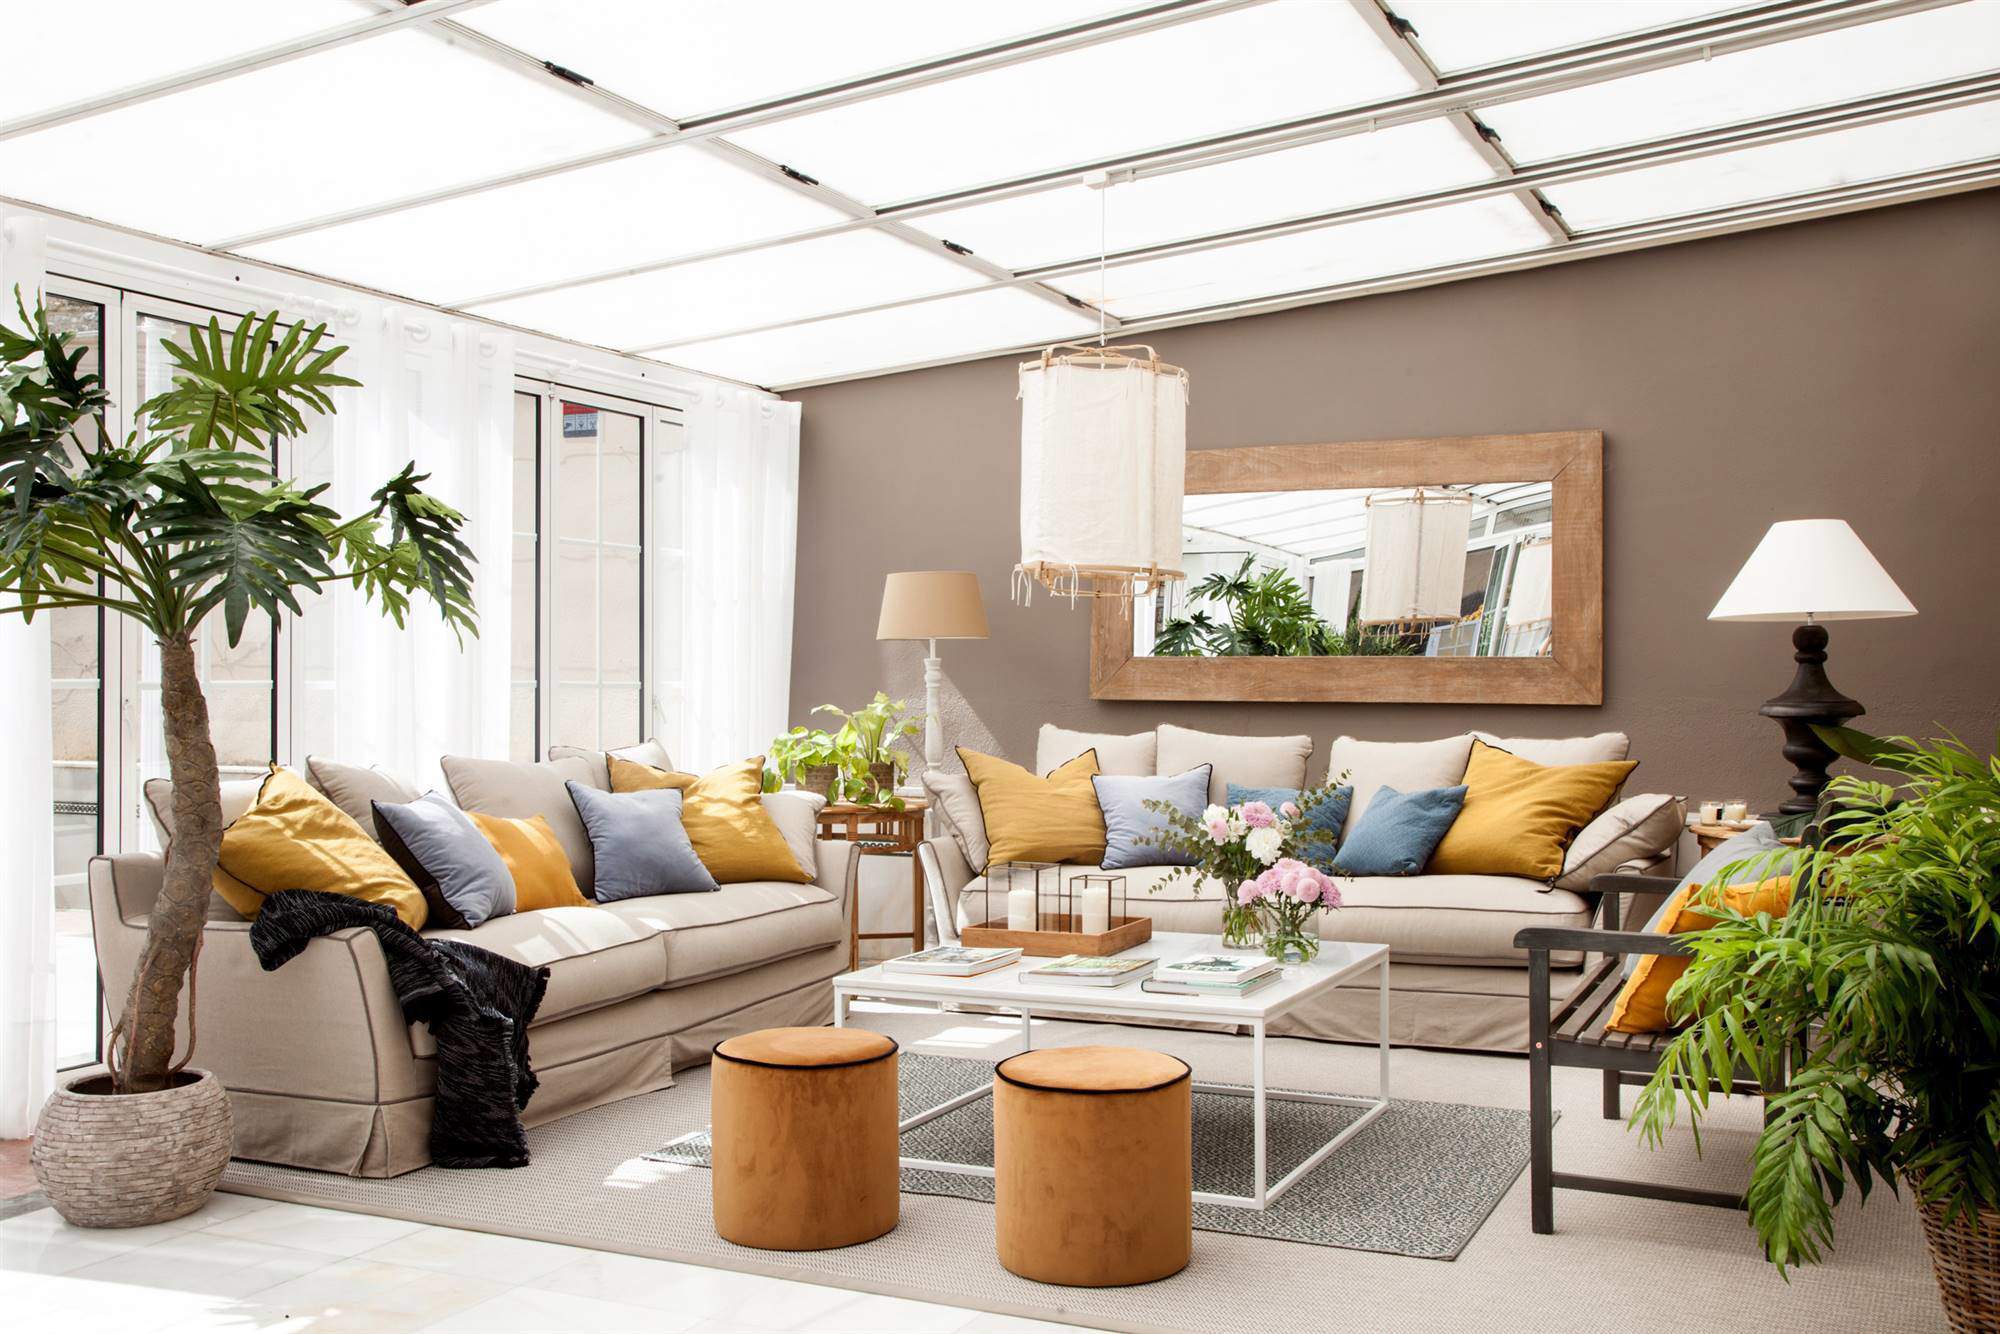 Salón acristalado con pared pintada de marrón, sofás, mesa de centro, pufs y planta XL